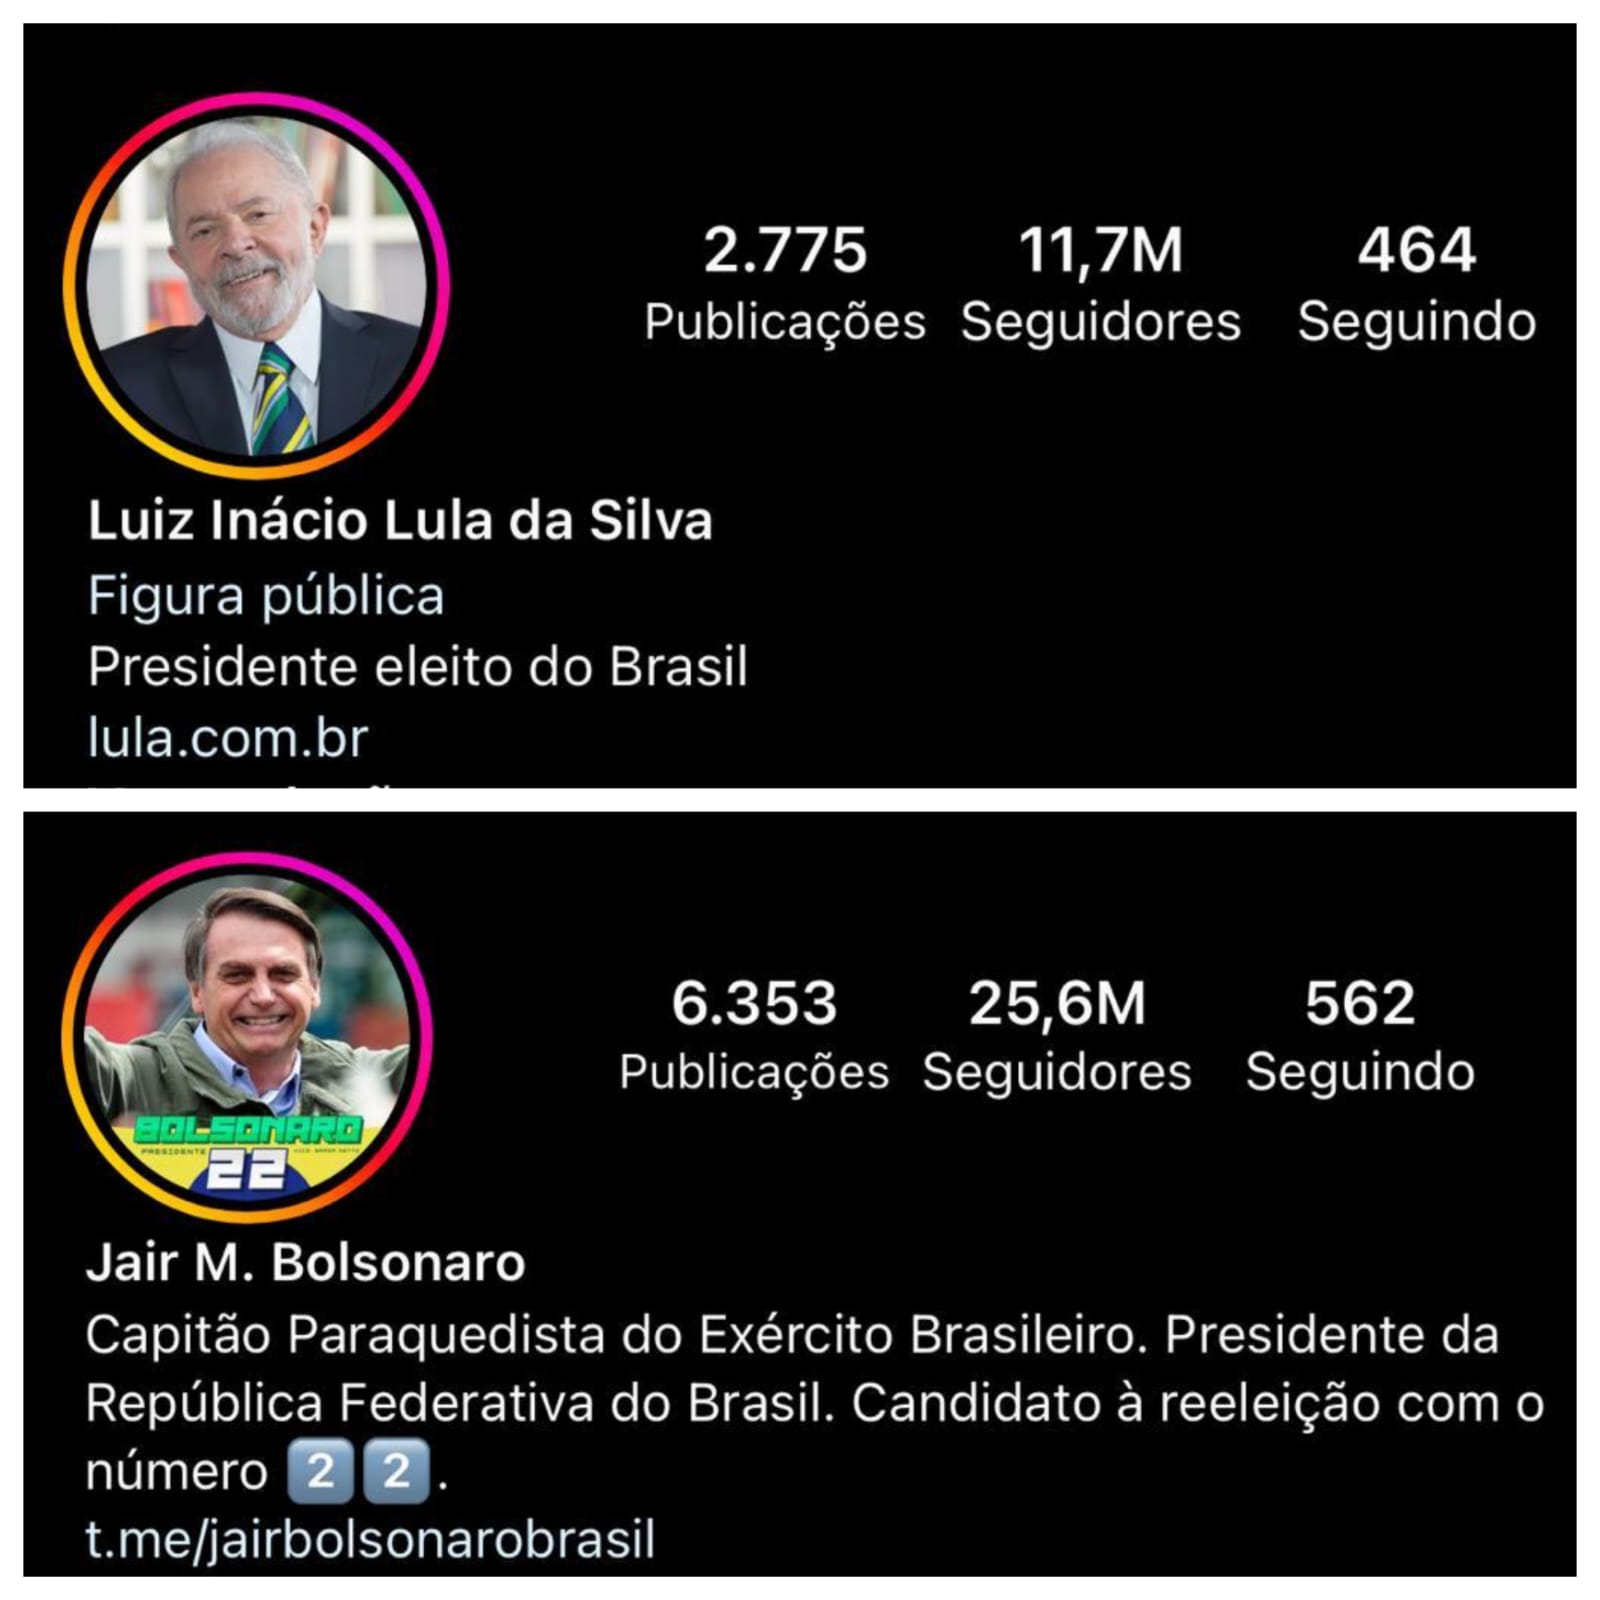 Perfil dos presidentes Bolsonaro e Lula nas redes sociais - Foto: Reprodução/Redes Sociais